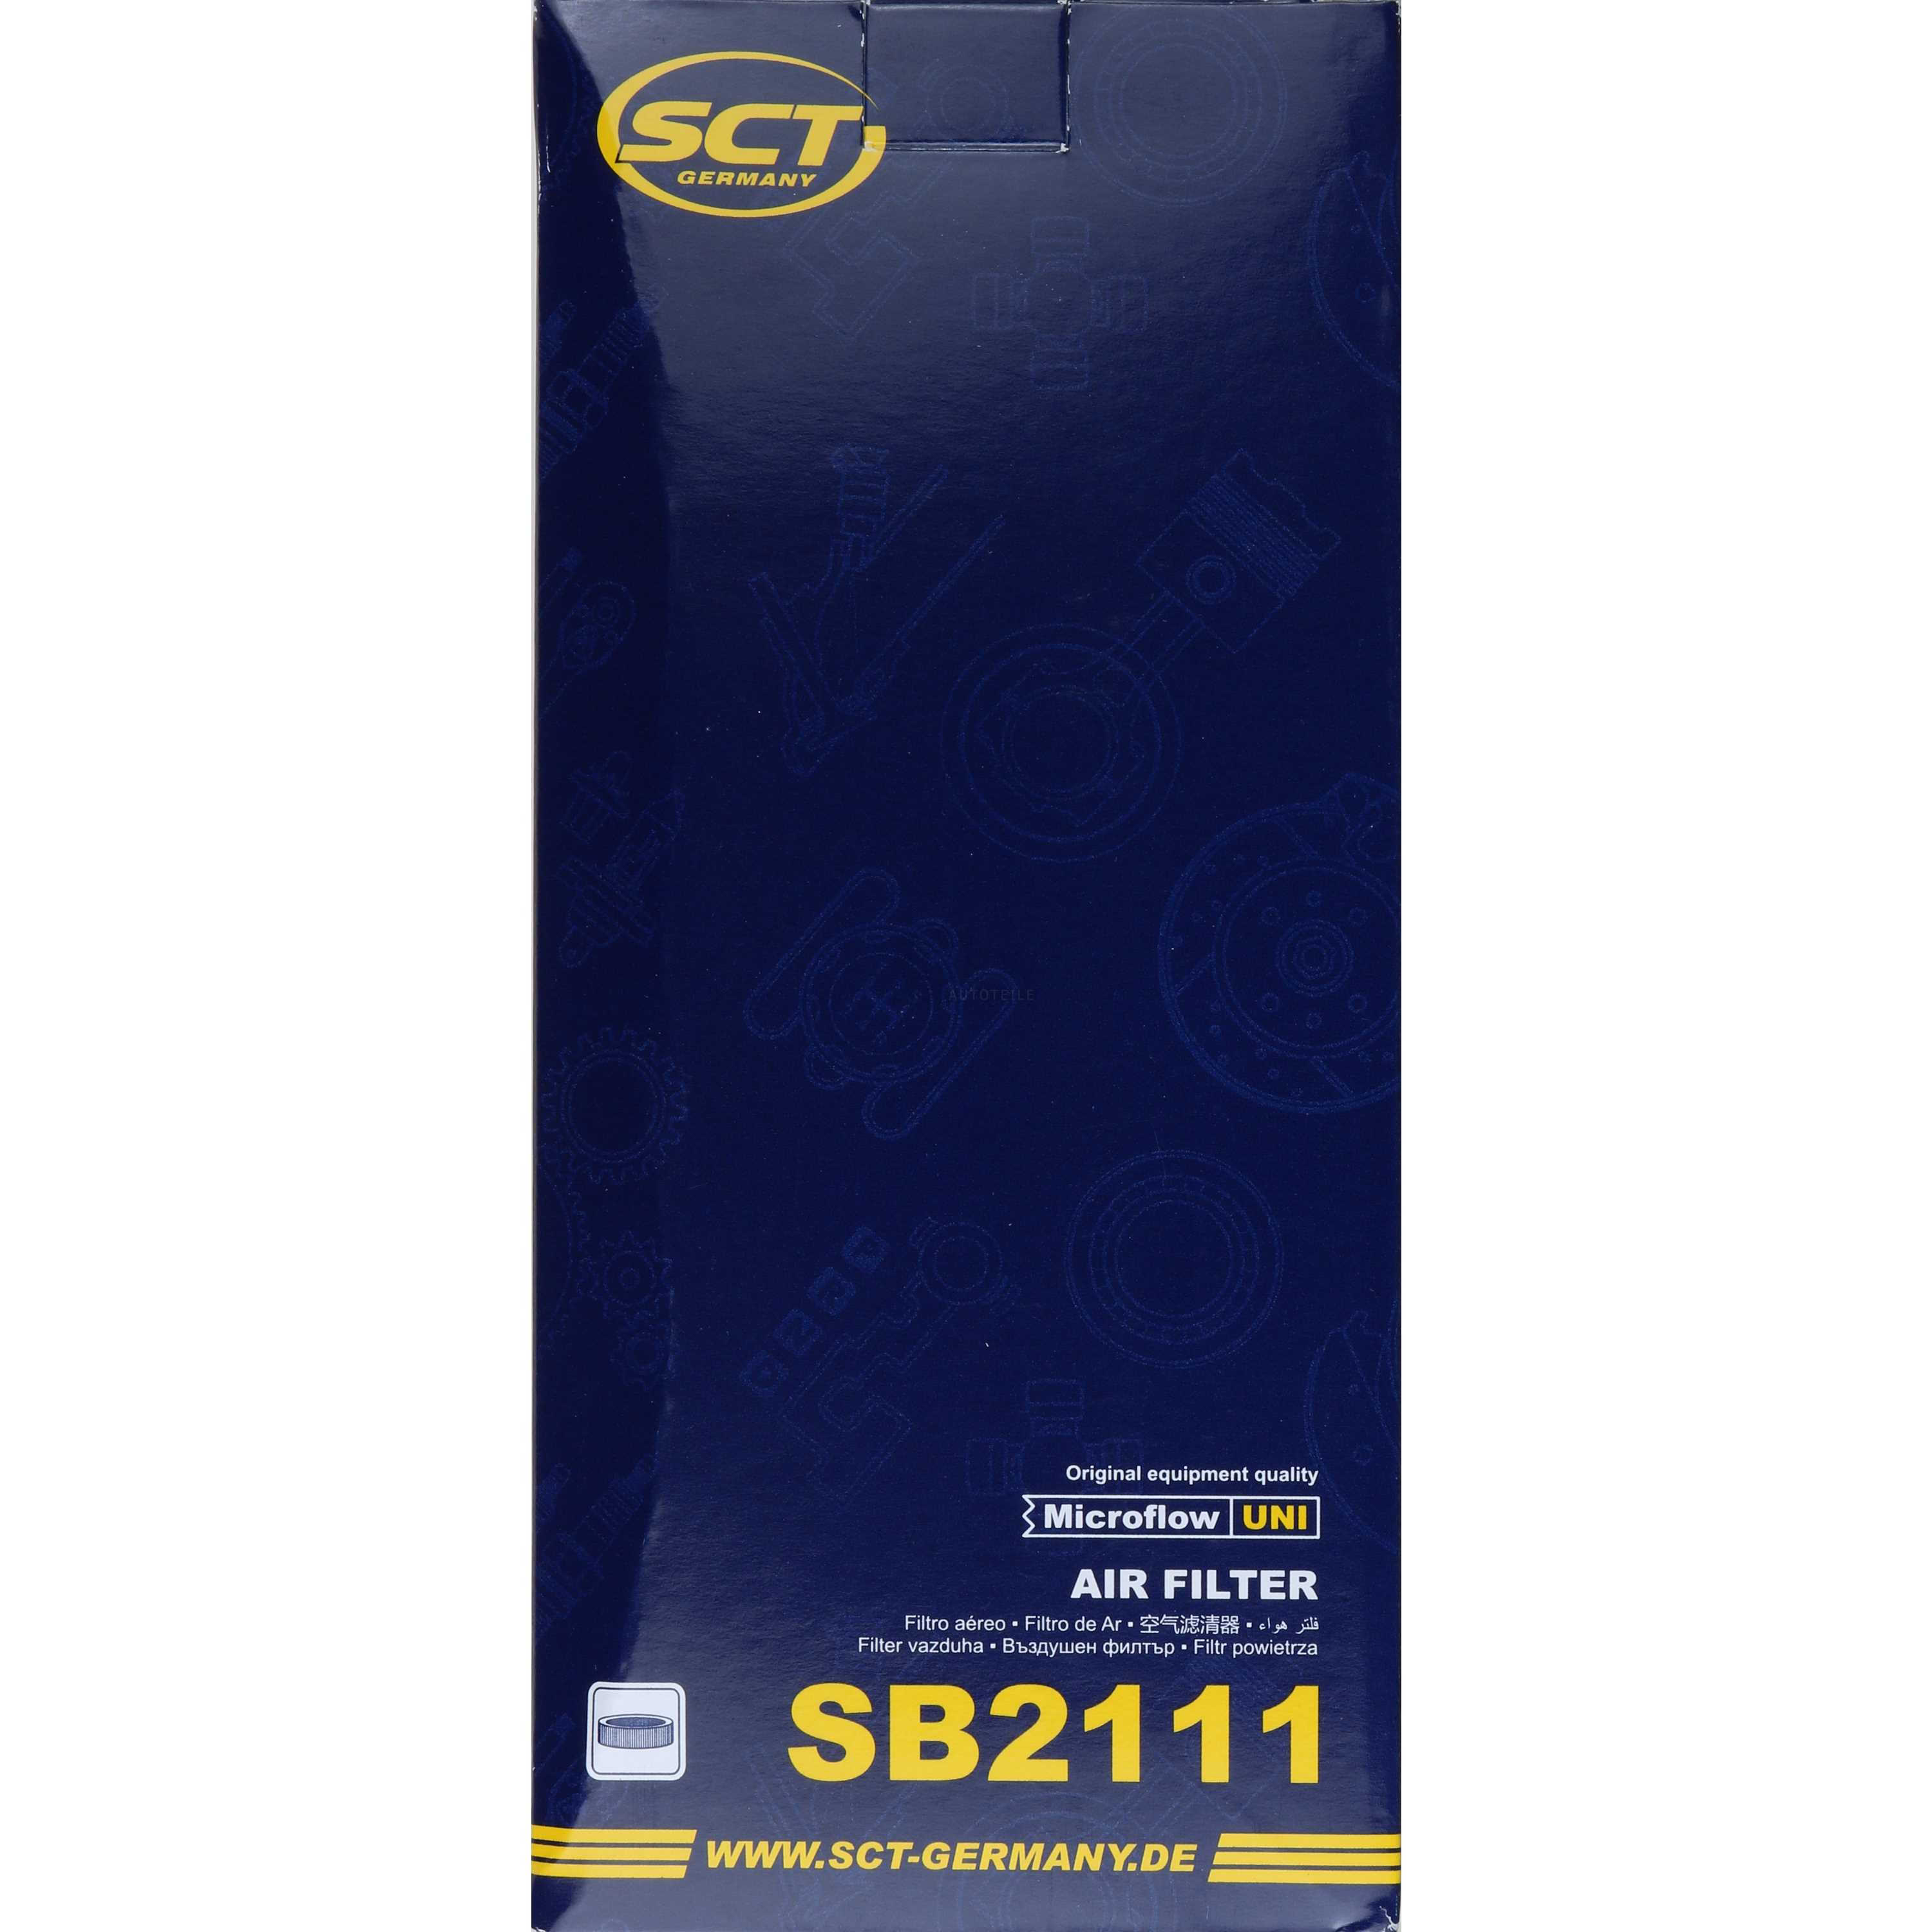 SCT Luftfilter Motorluftfilter SB 2111 Air Filter